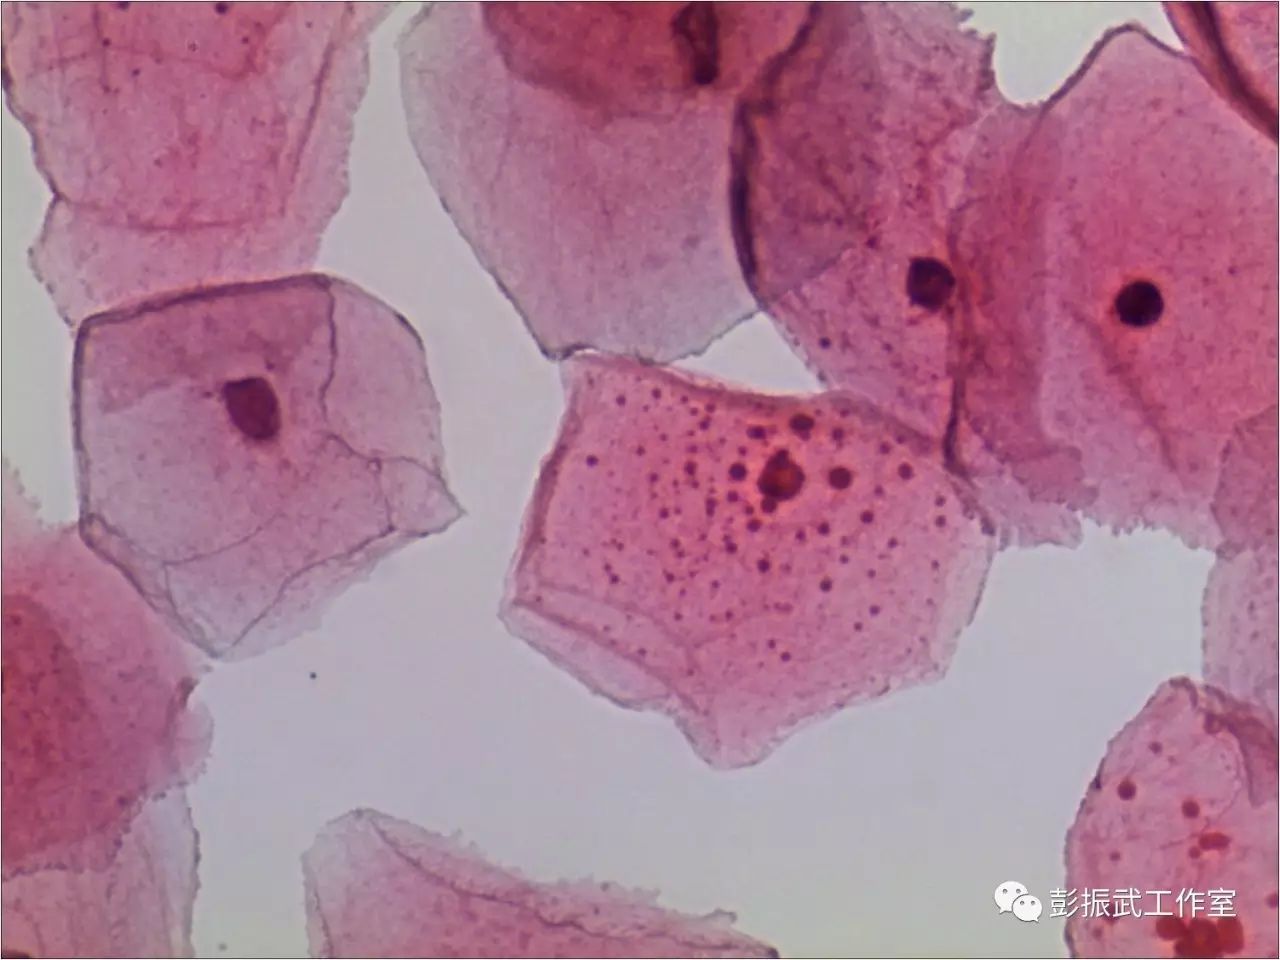 鳞状细胞基本形态